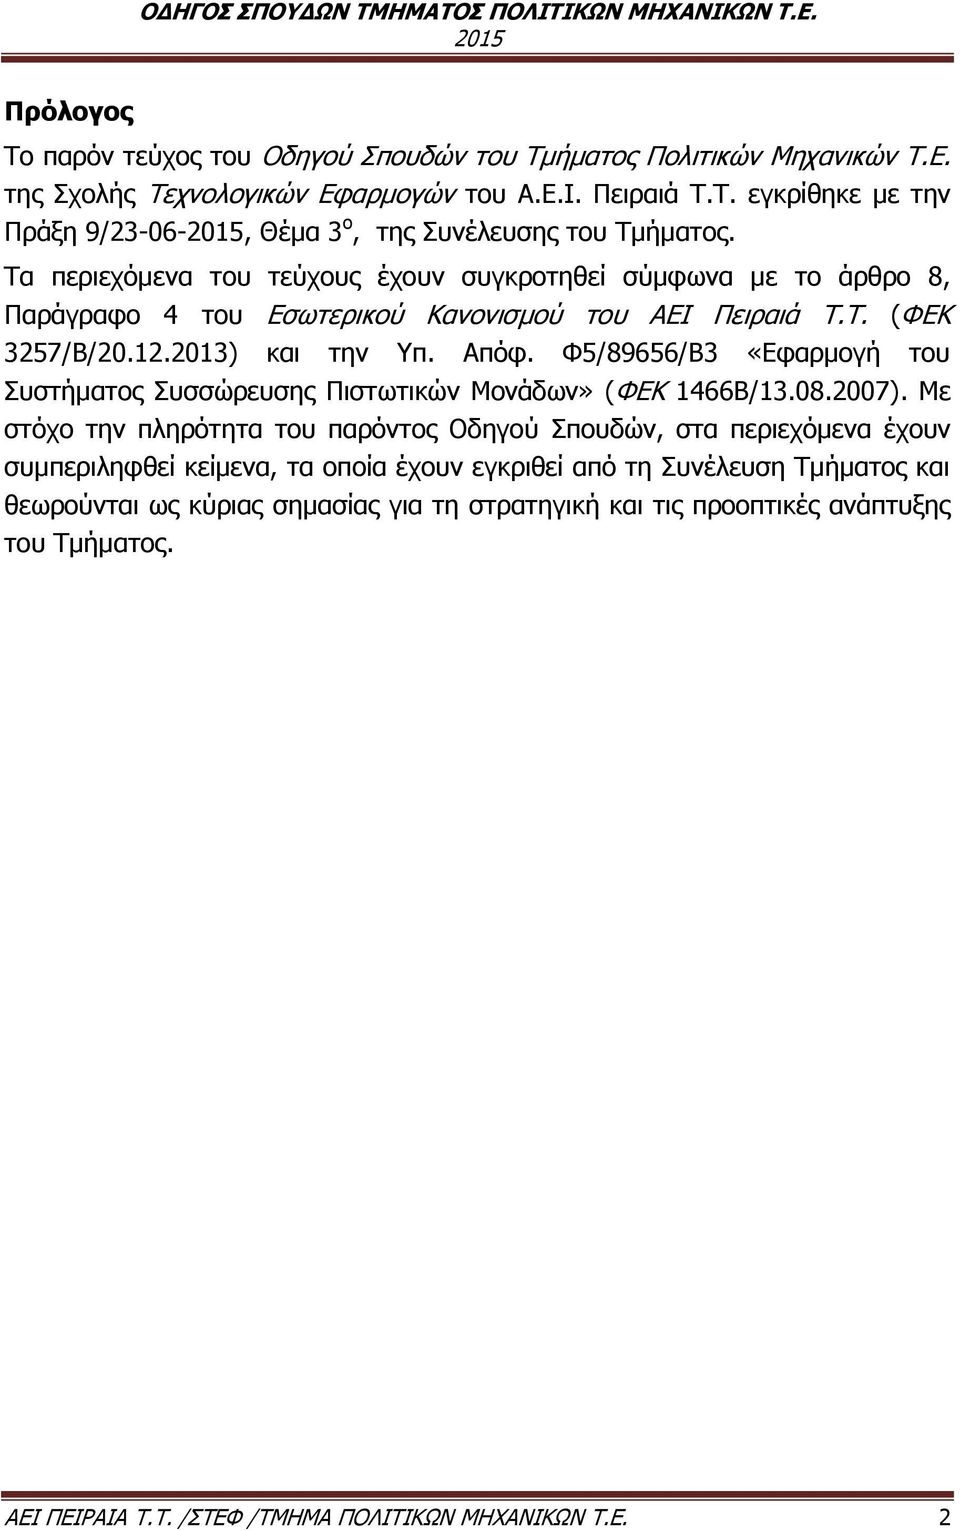 Τα περιεχόμενα του τεύχους έχουν συγκροτηθεί σύμφωνα με το άρθρο 8, Παράγραφο 4 του Εσωτερικού Κανονισμού του ΑΕΙ Πειραιά Τ.Τ. (ΦΕΚ 3257/Β/20.12.2013) και την Υπ. Απόφ.